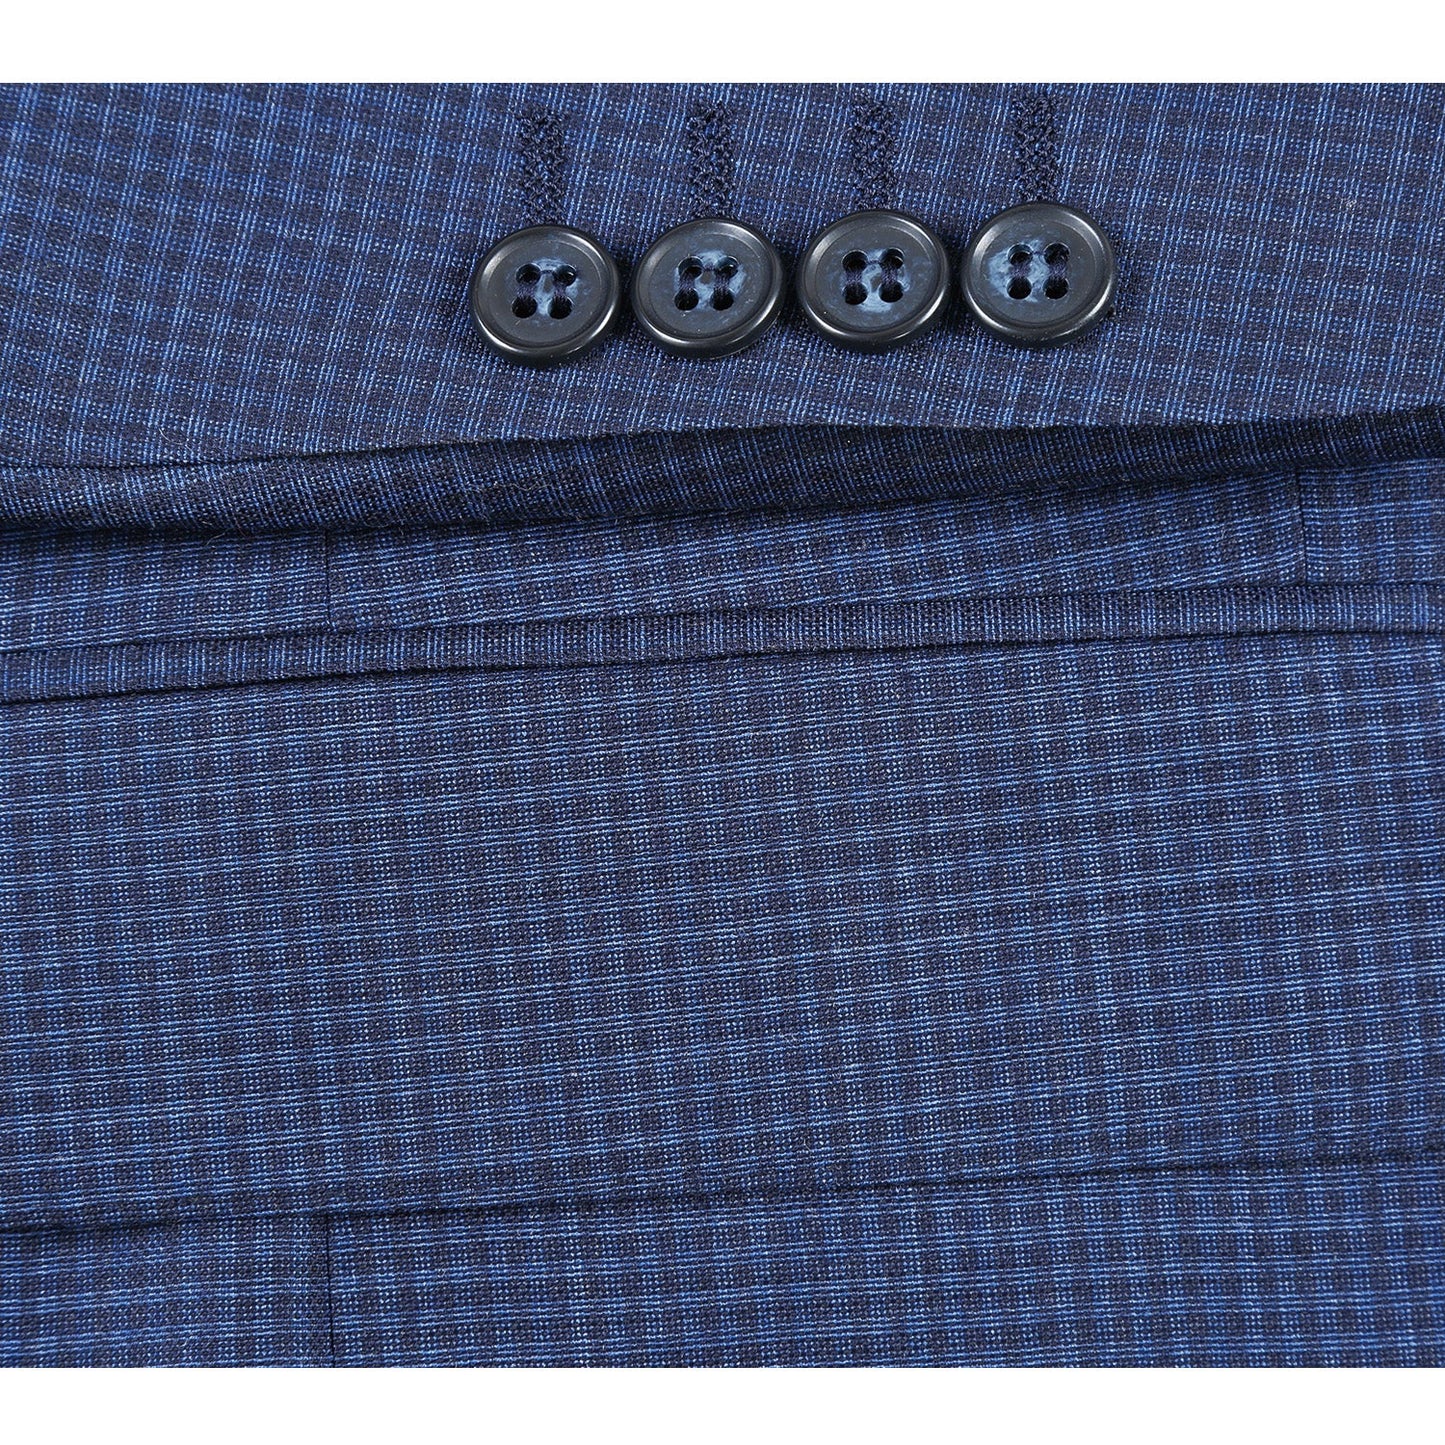 564-4 Men's Slim Fit Wool Blue Check Suit